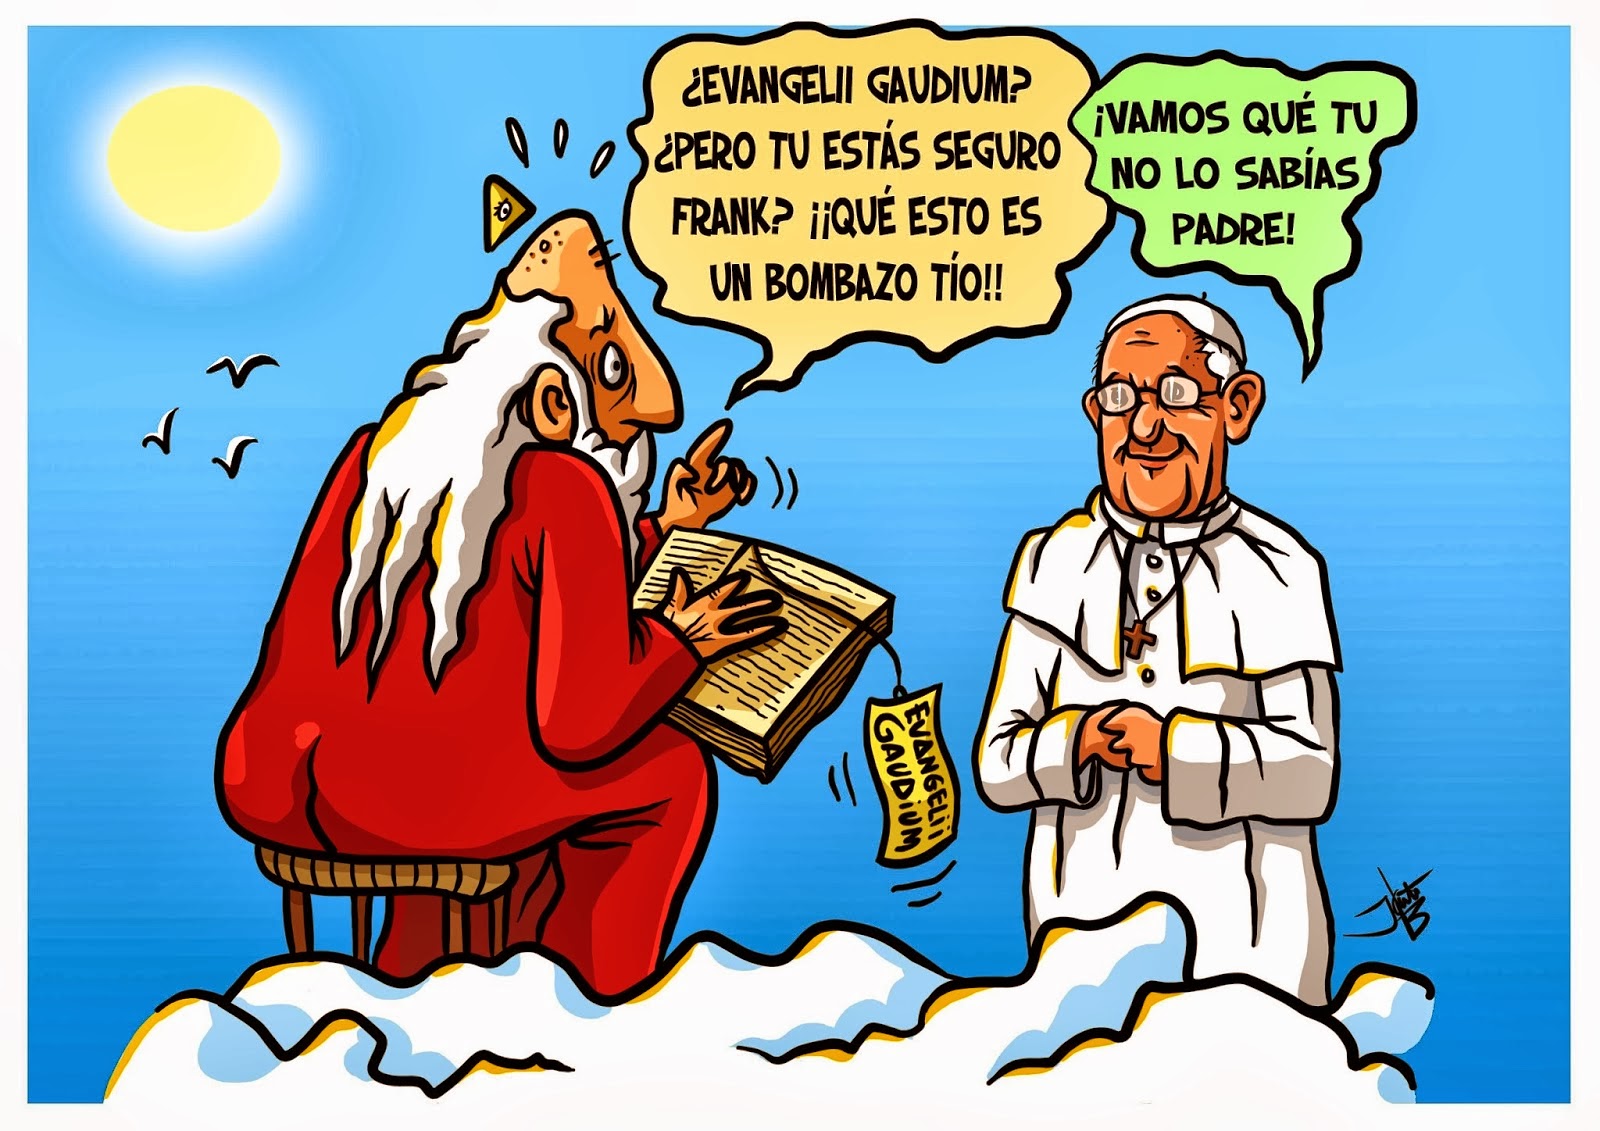 La «exhortación» del Papa: Evangelii Gaudium –